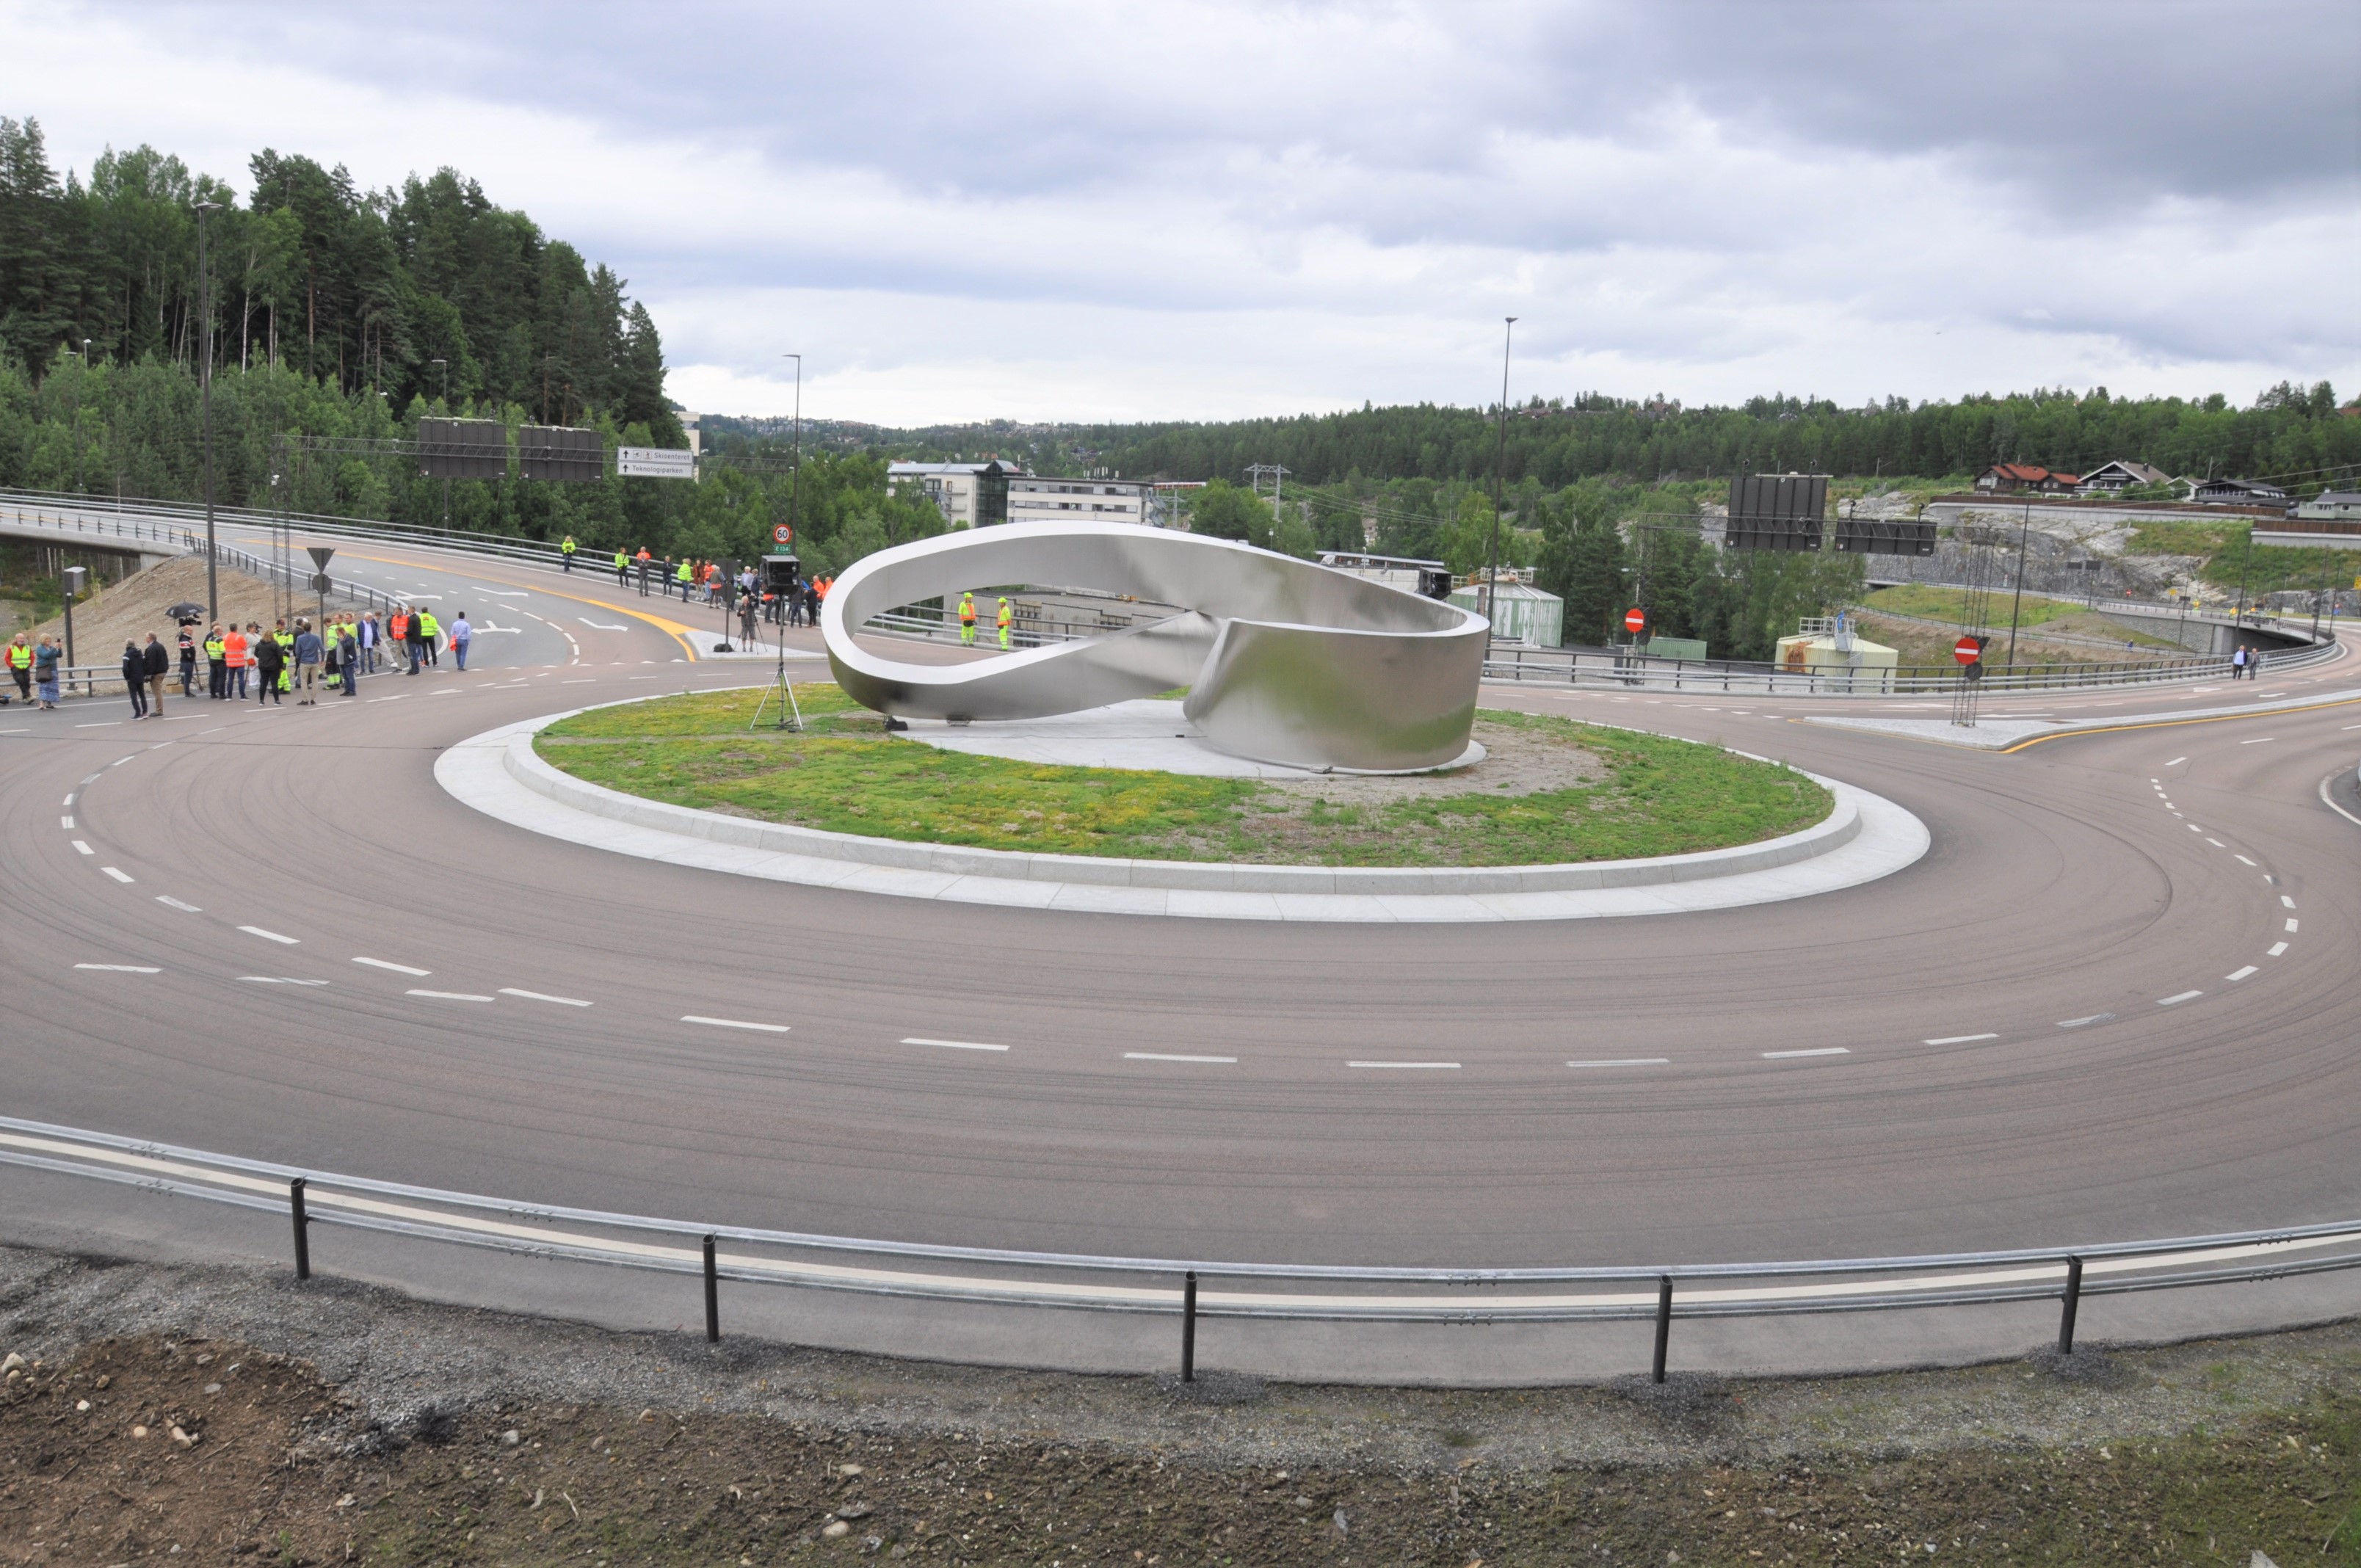 Prosjektets største kunstverk Møbius i rundkjøring i Sellikdalen. (Foto: Kjell Wold)